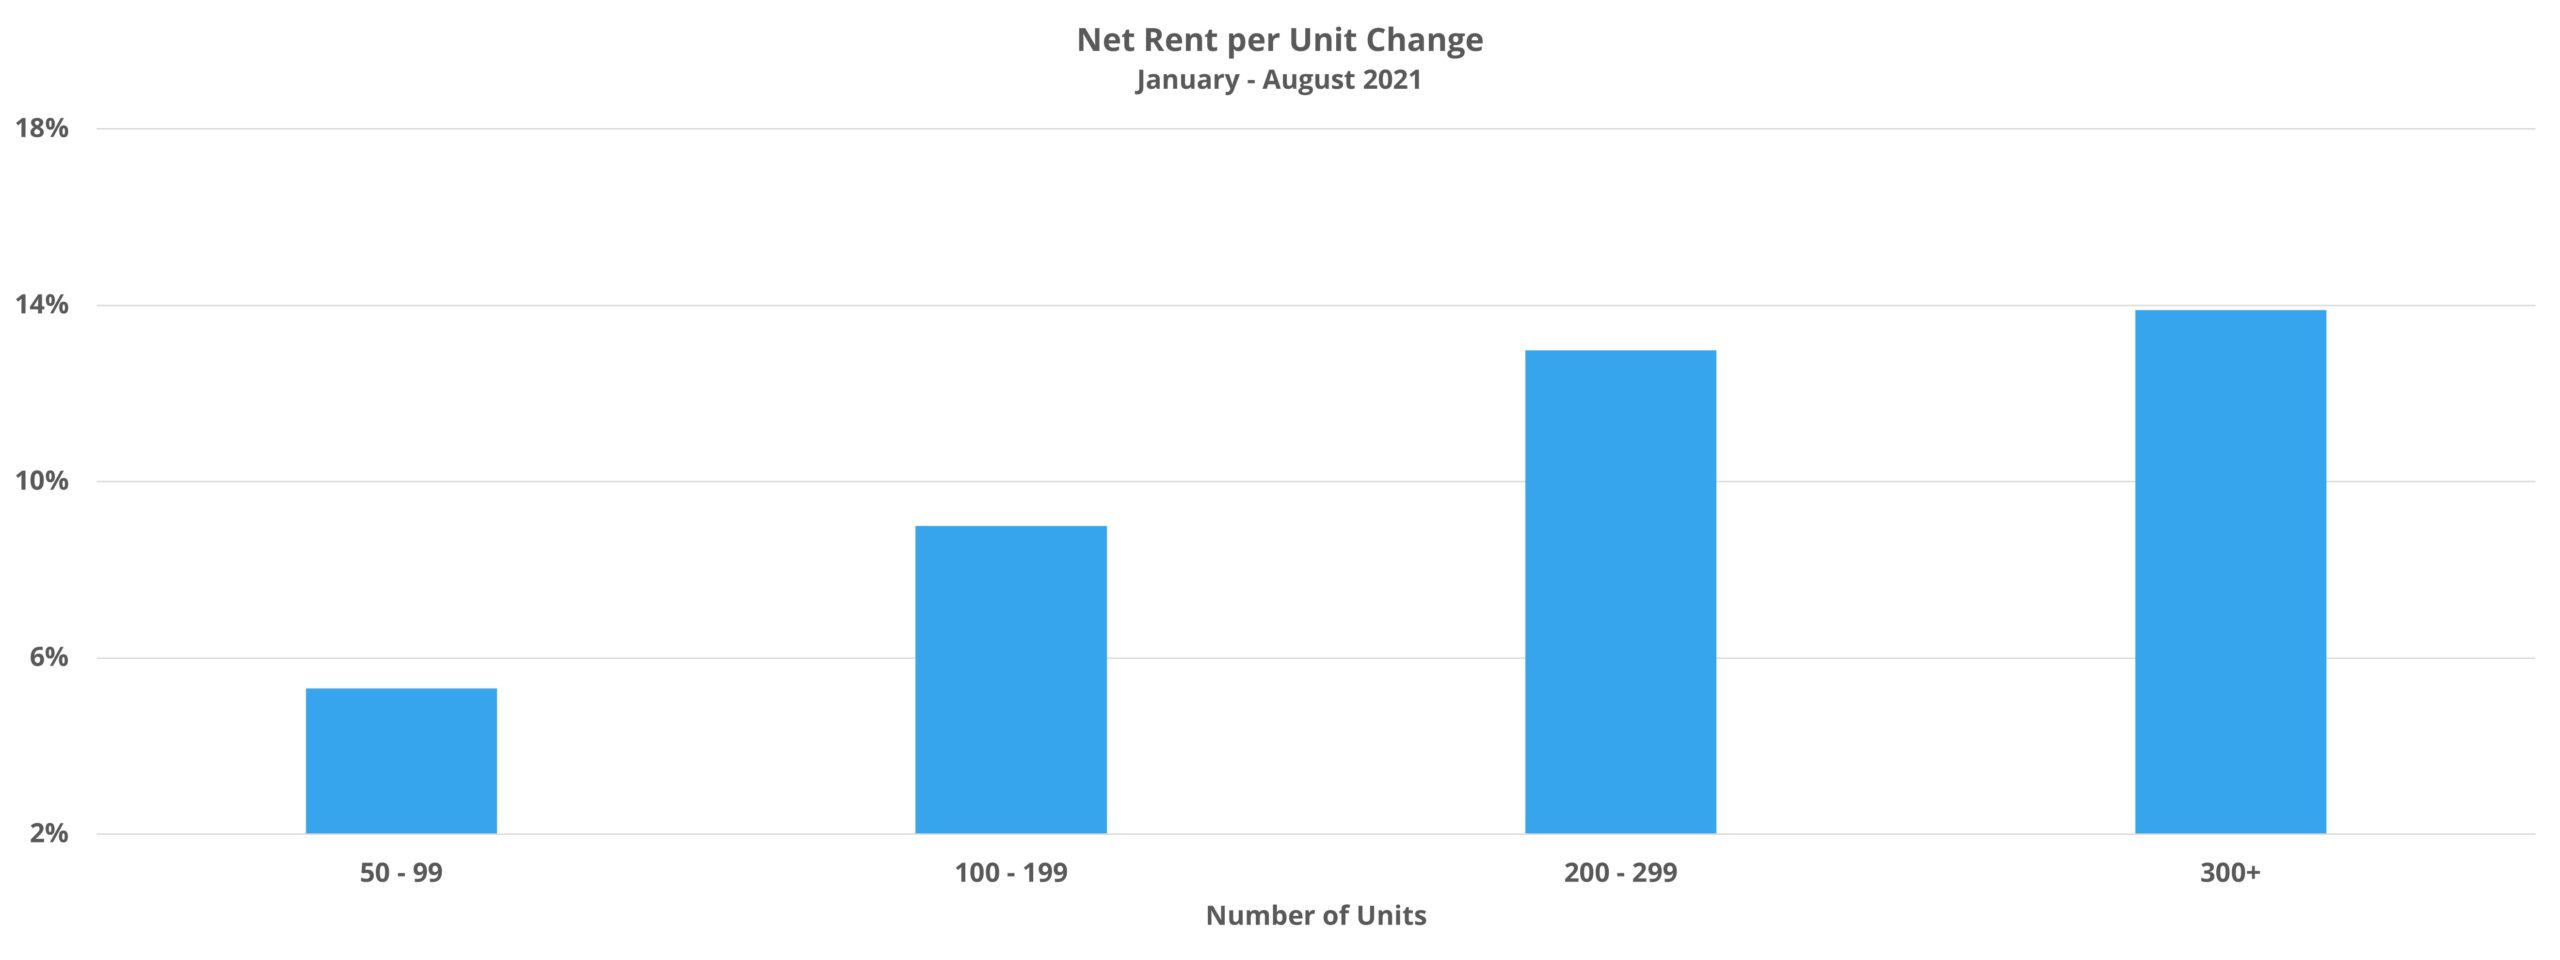 Net Rent per Unit Change